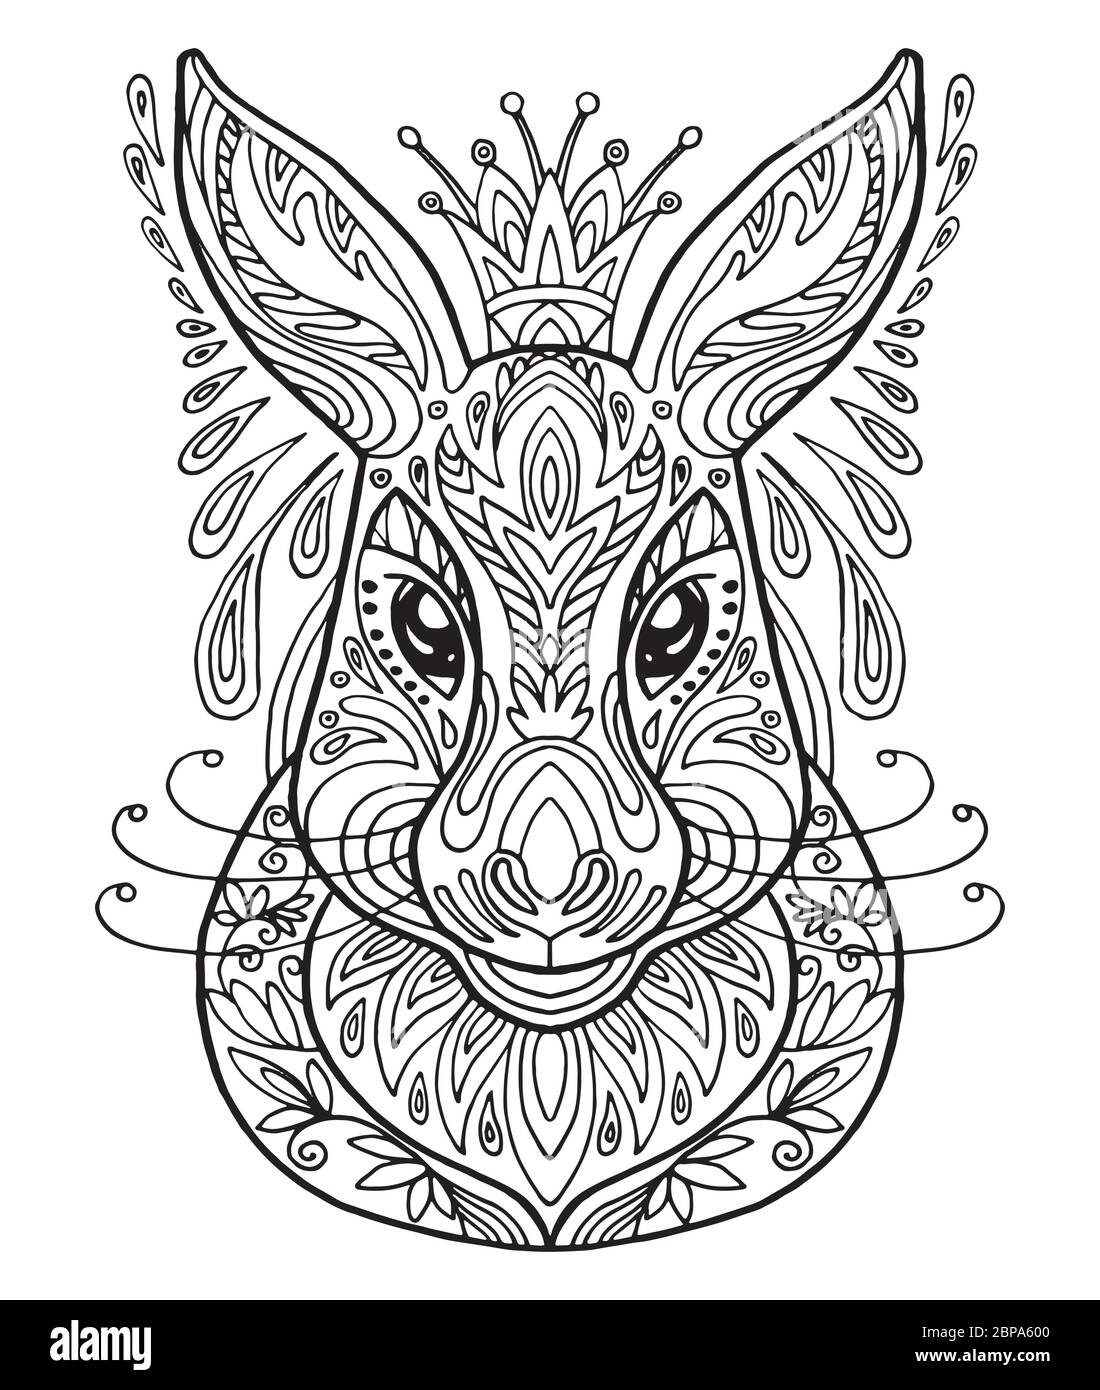 Vektor dekorativen Doodle ornamentalen Kopf des Hasen. Abstrakte Vektor-Illustration von Hase schwarze Kontur isoliert auf weißem Hintergrund. Abbildung des Lagerbestands Stock Vektor